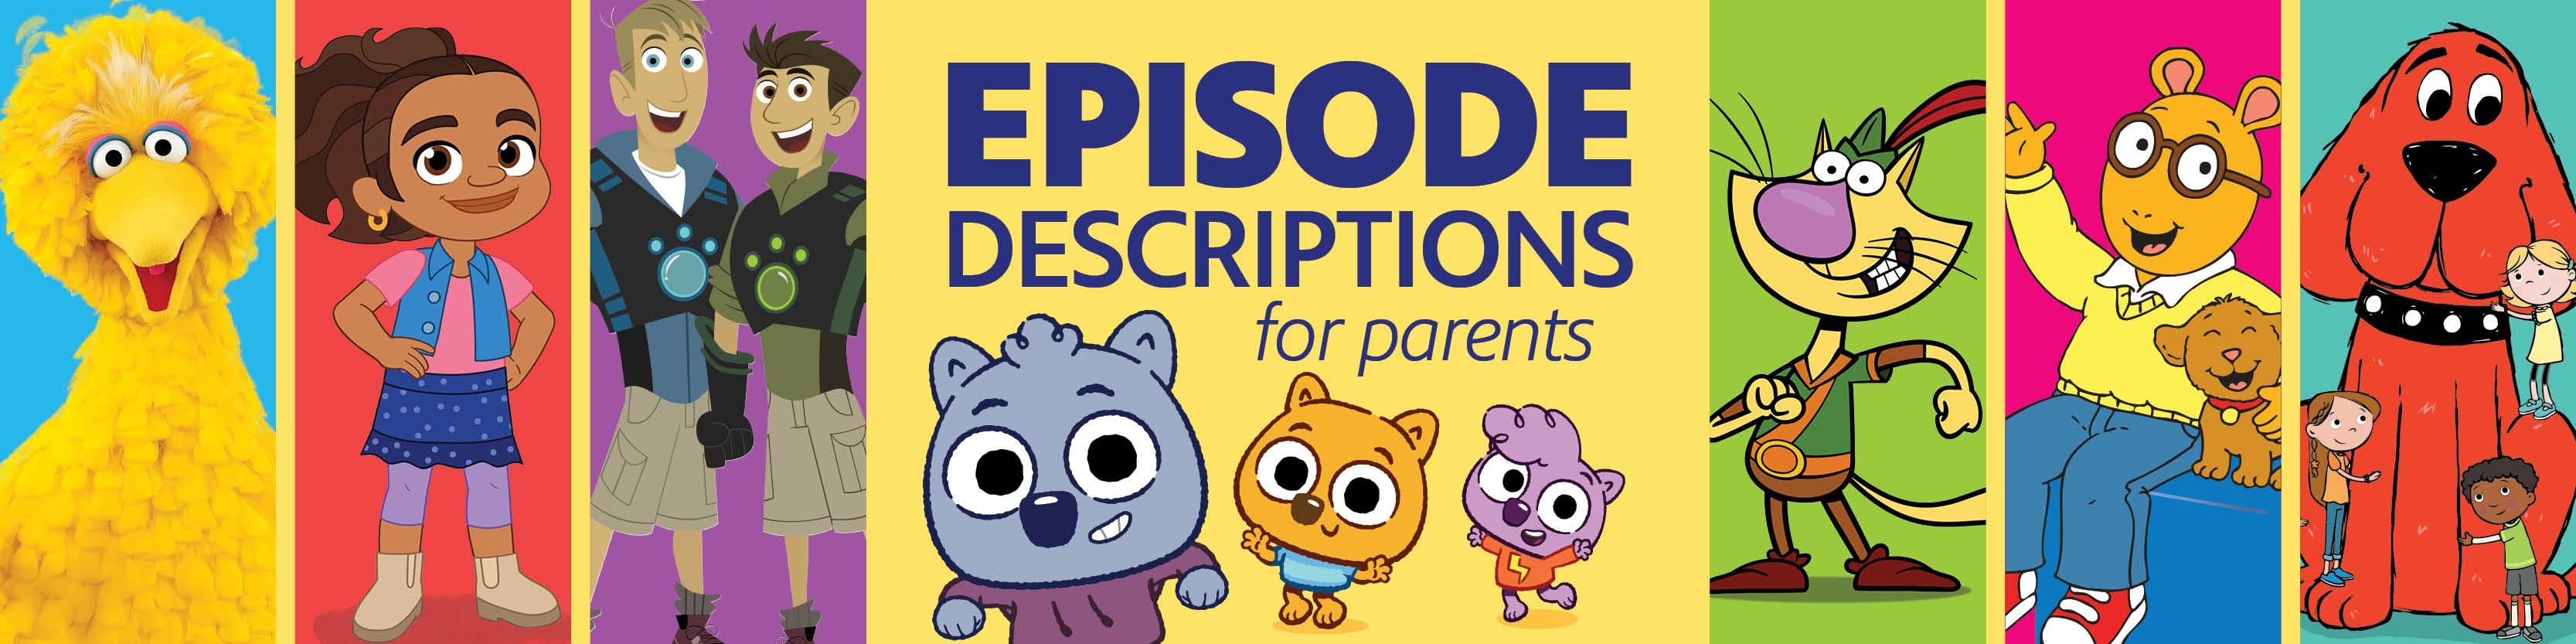 Episode Descriptions for Parents